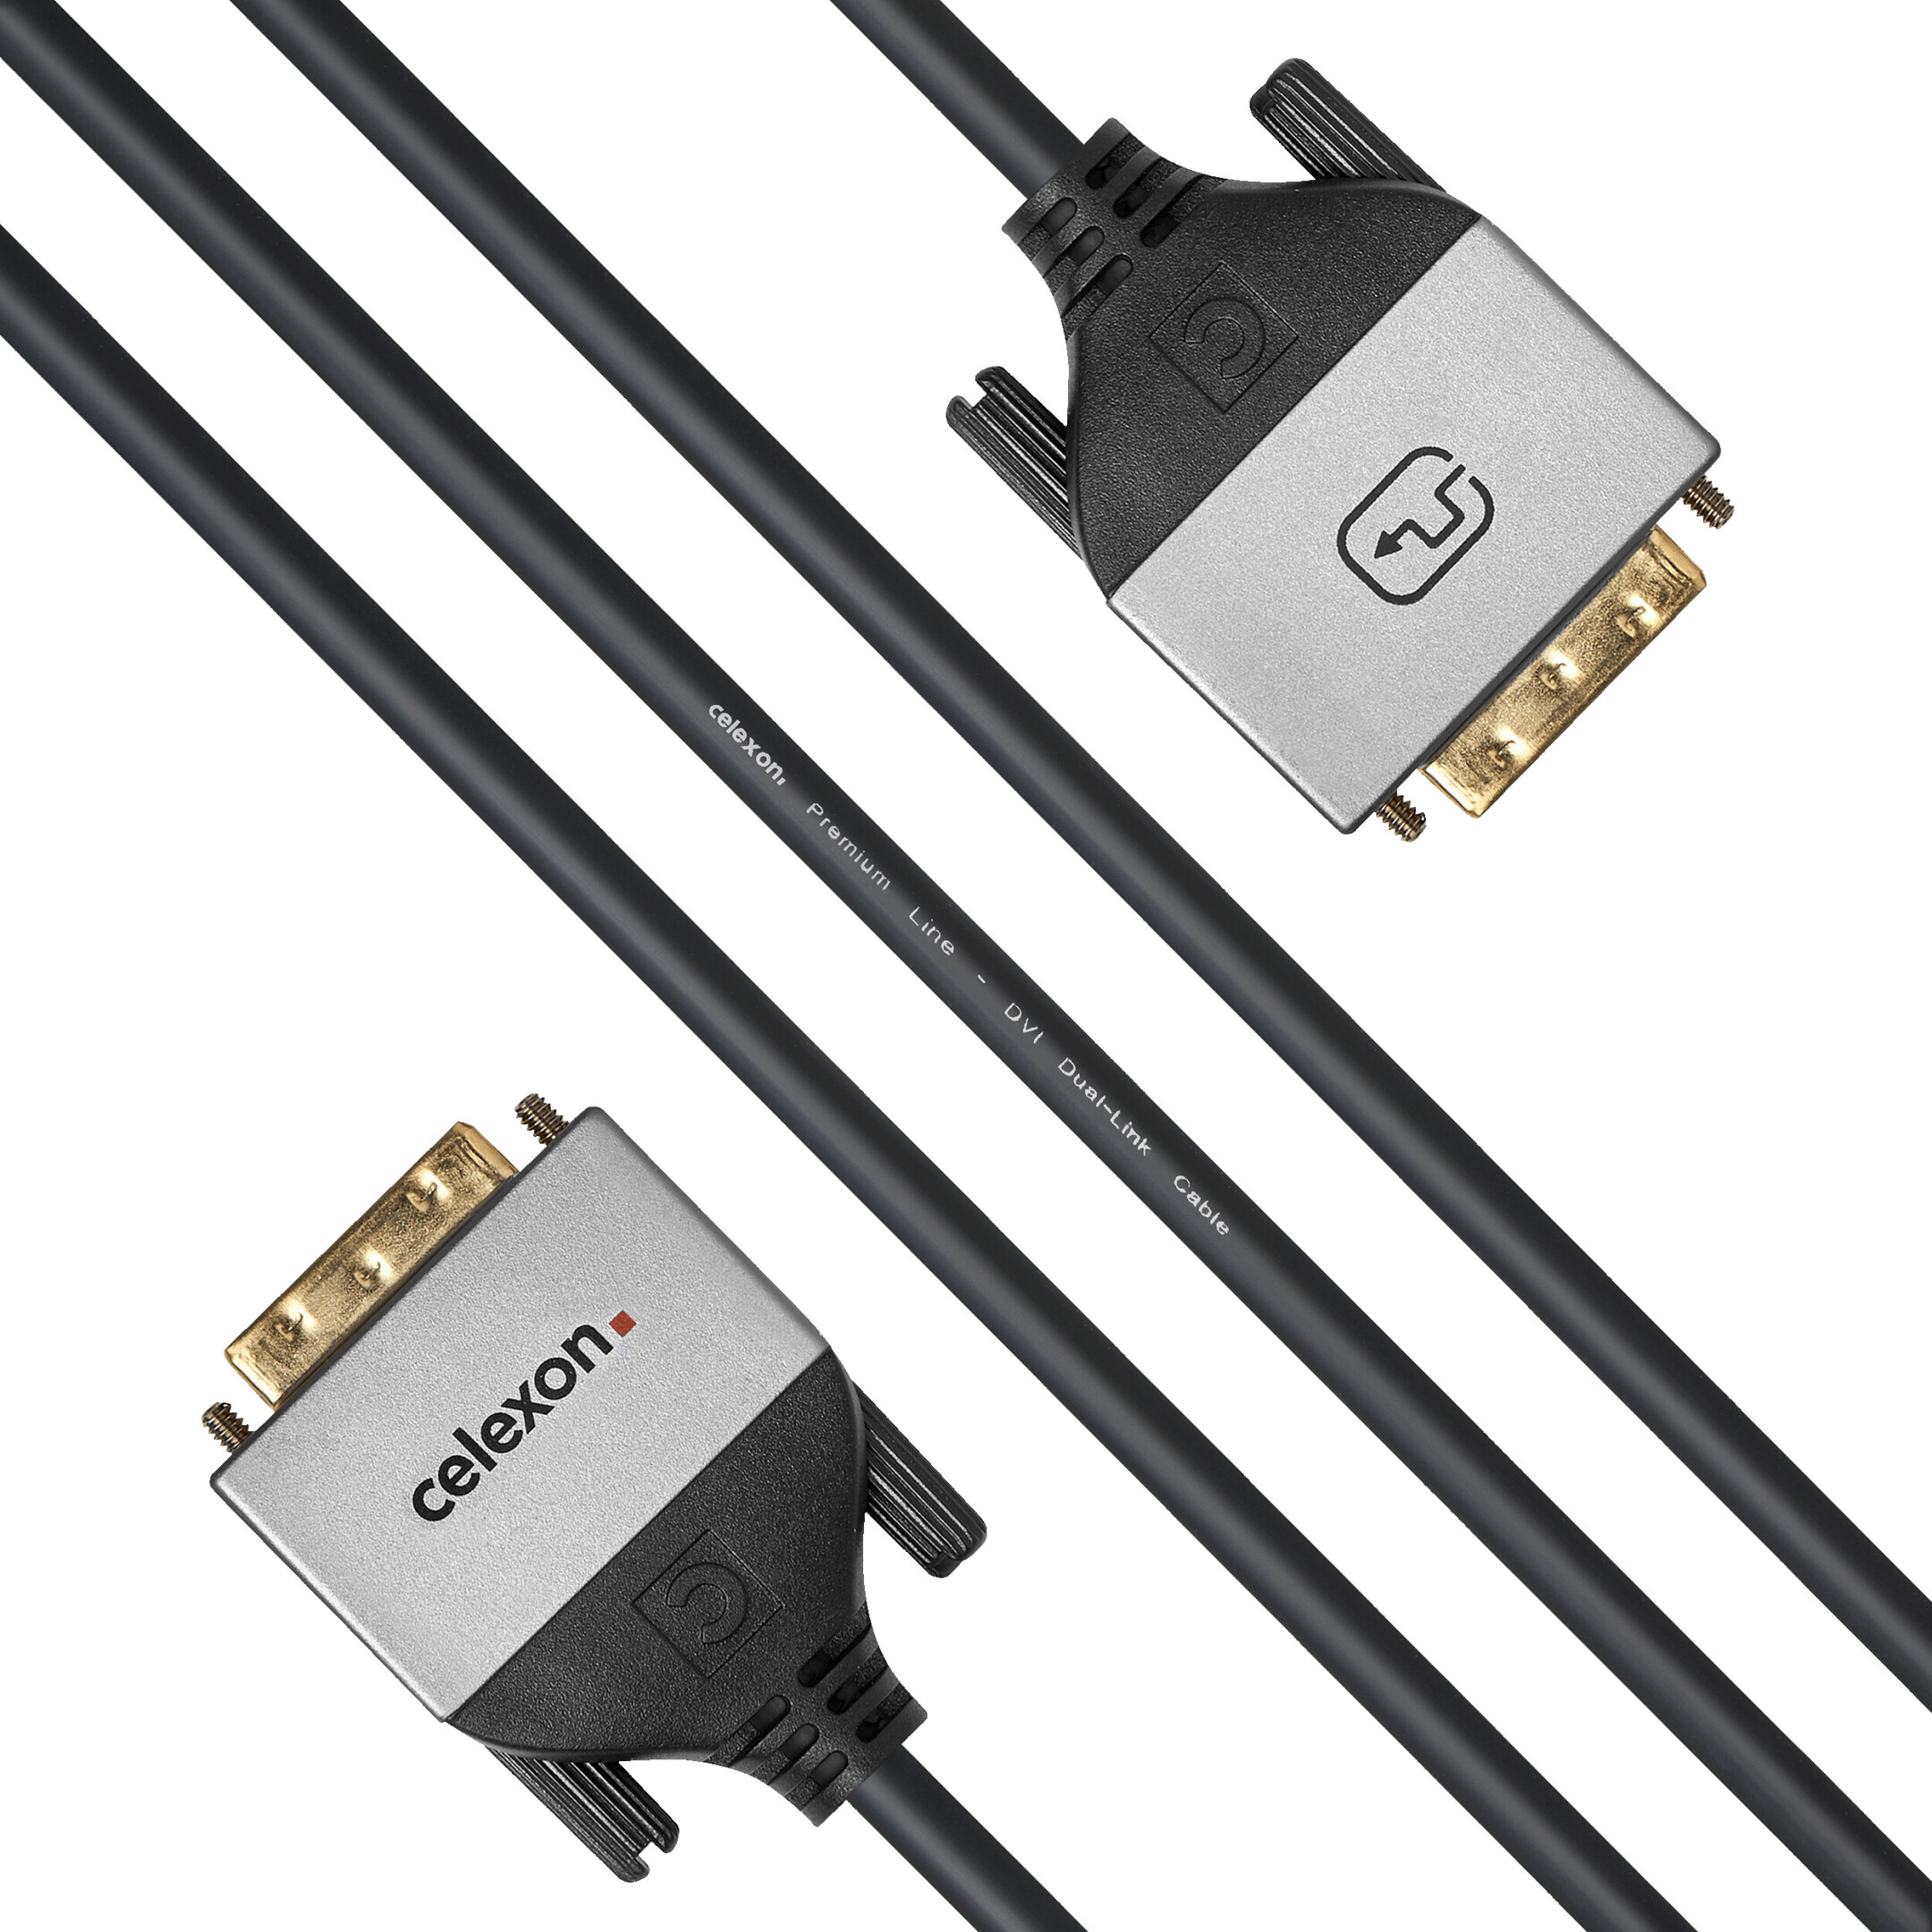 celexon-DVI-Dual-Link-Kabel-5-0m-Professional-Line